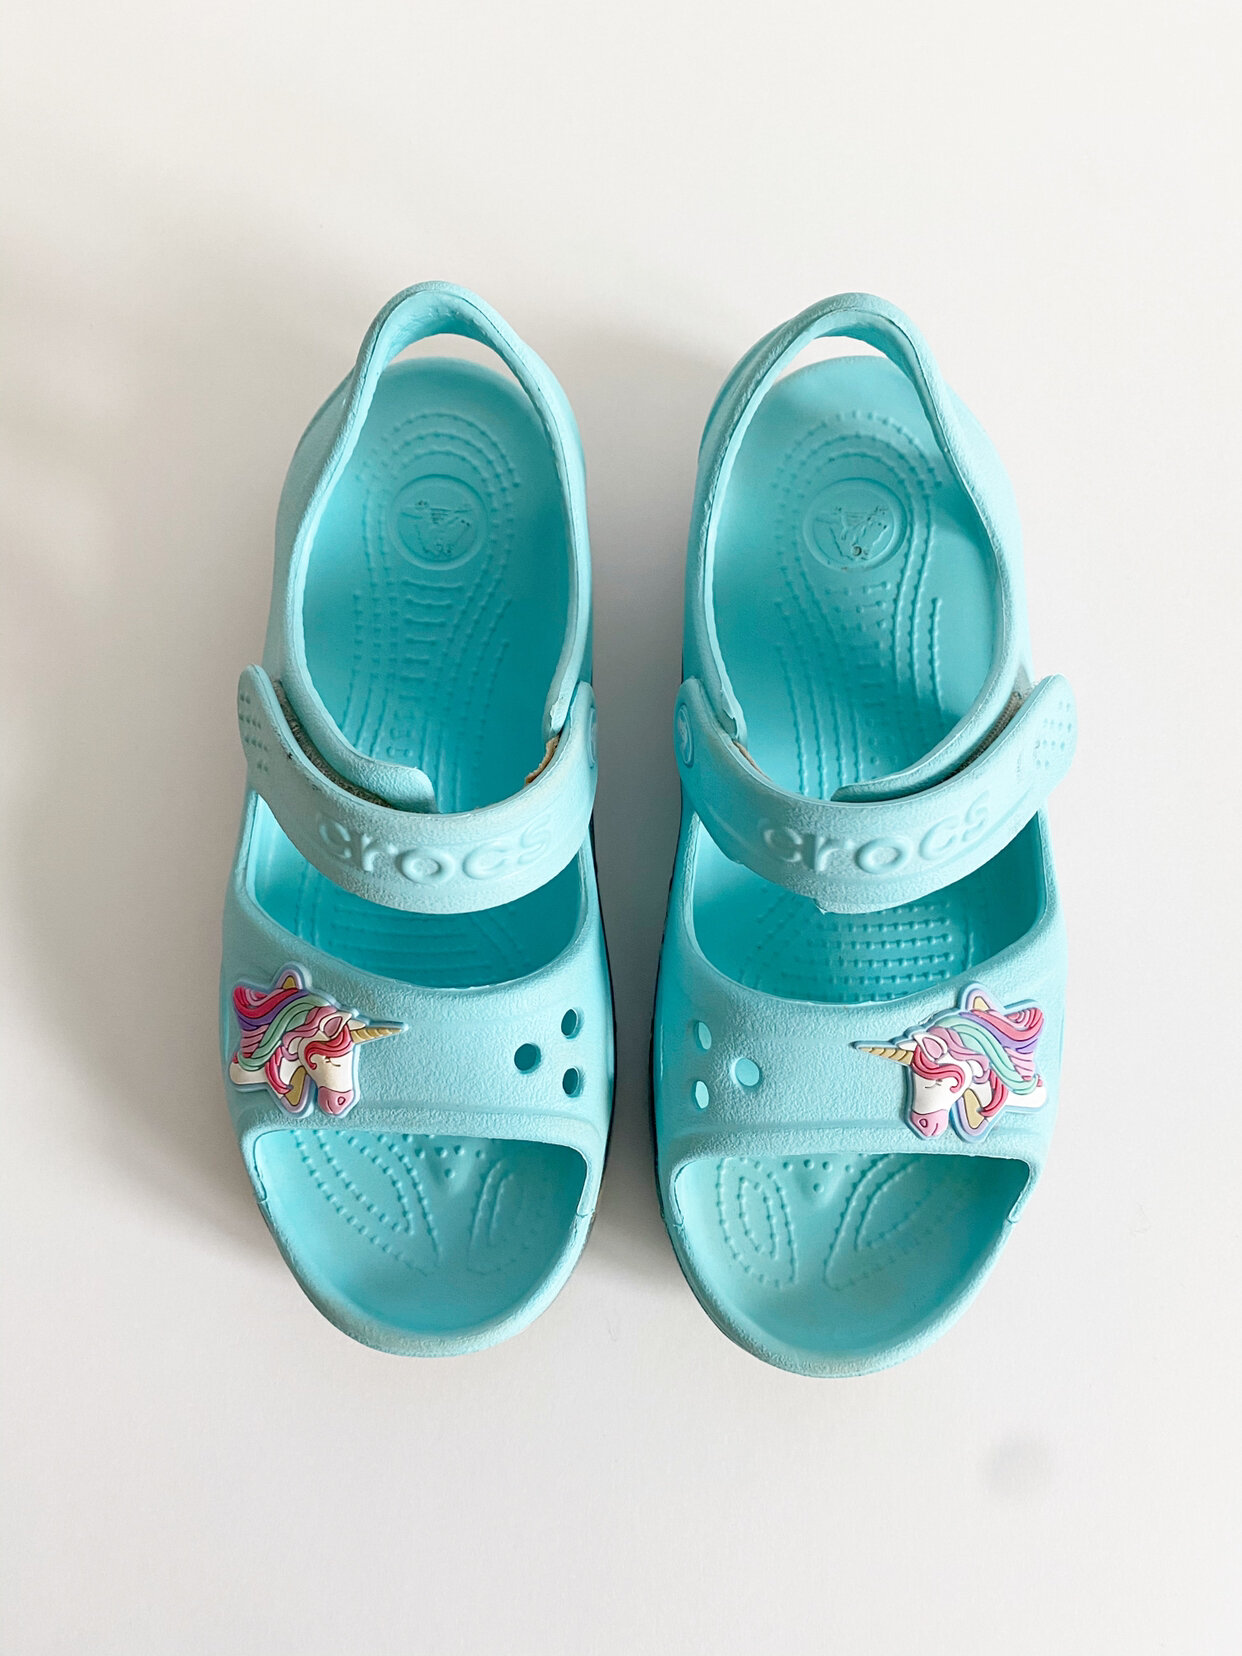 Crocs Unicorn Sandals